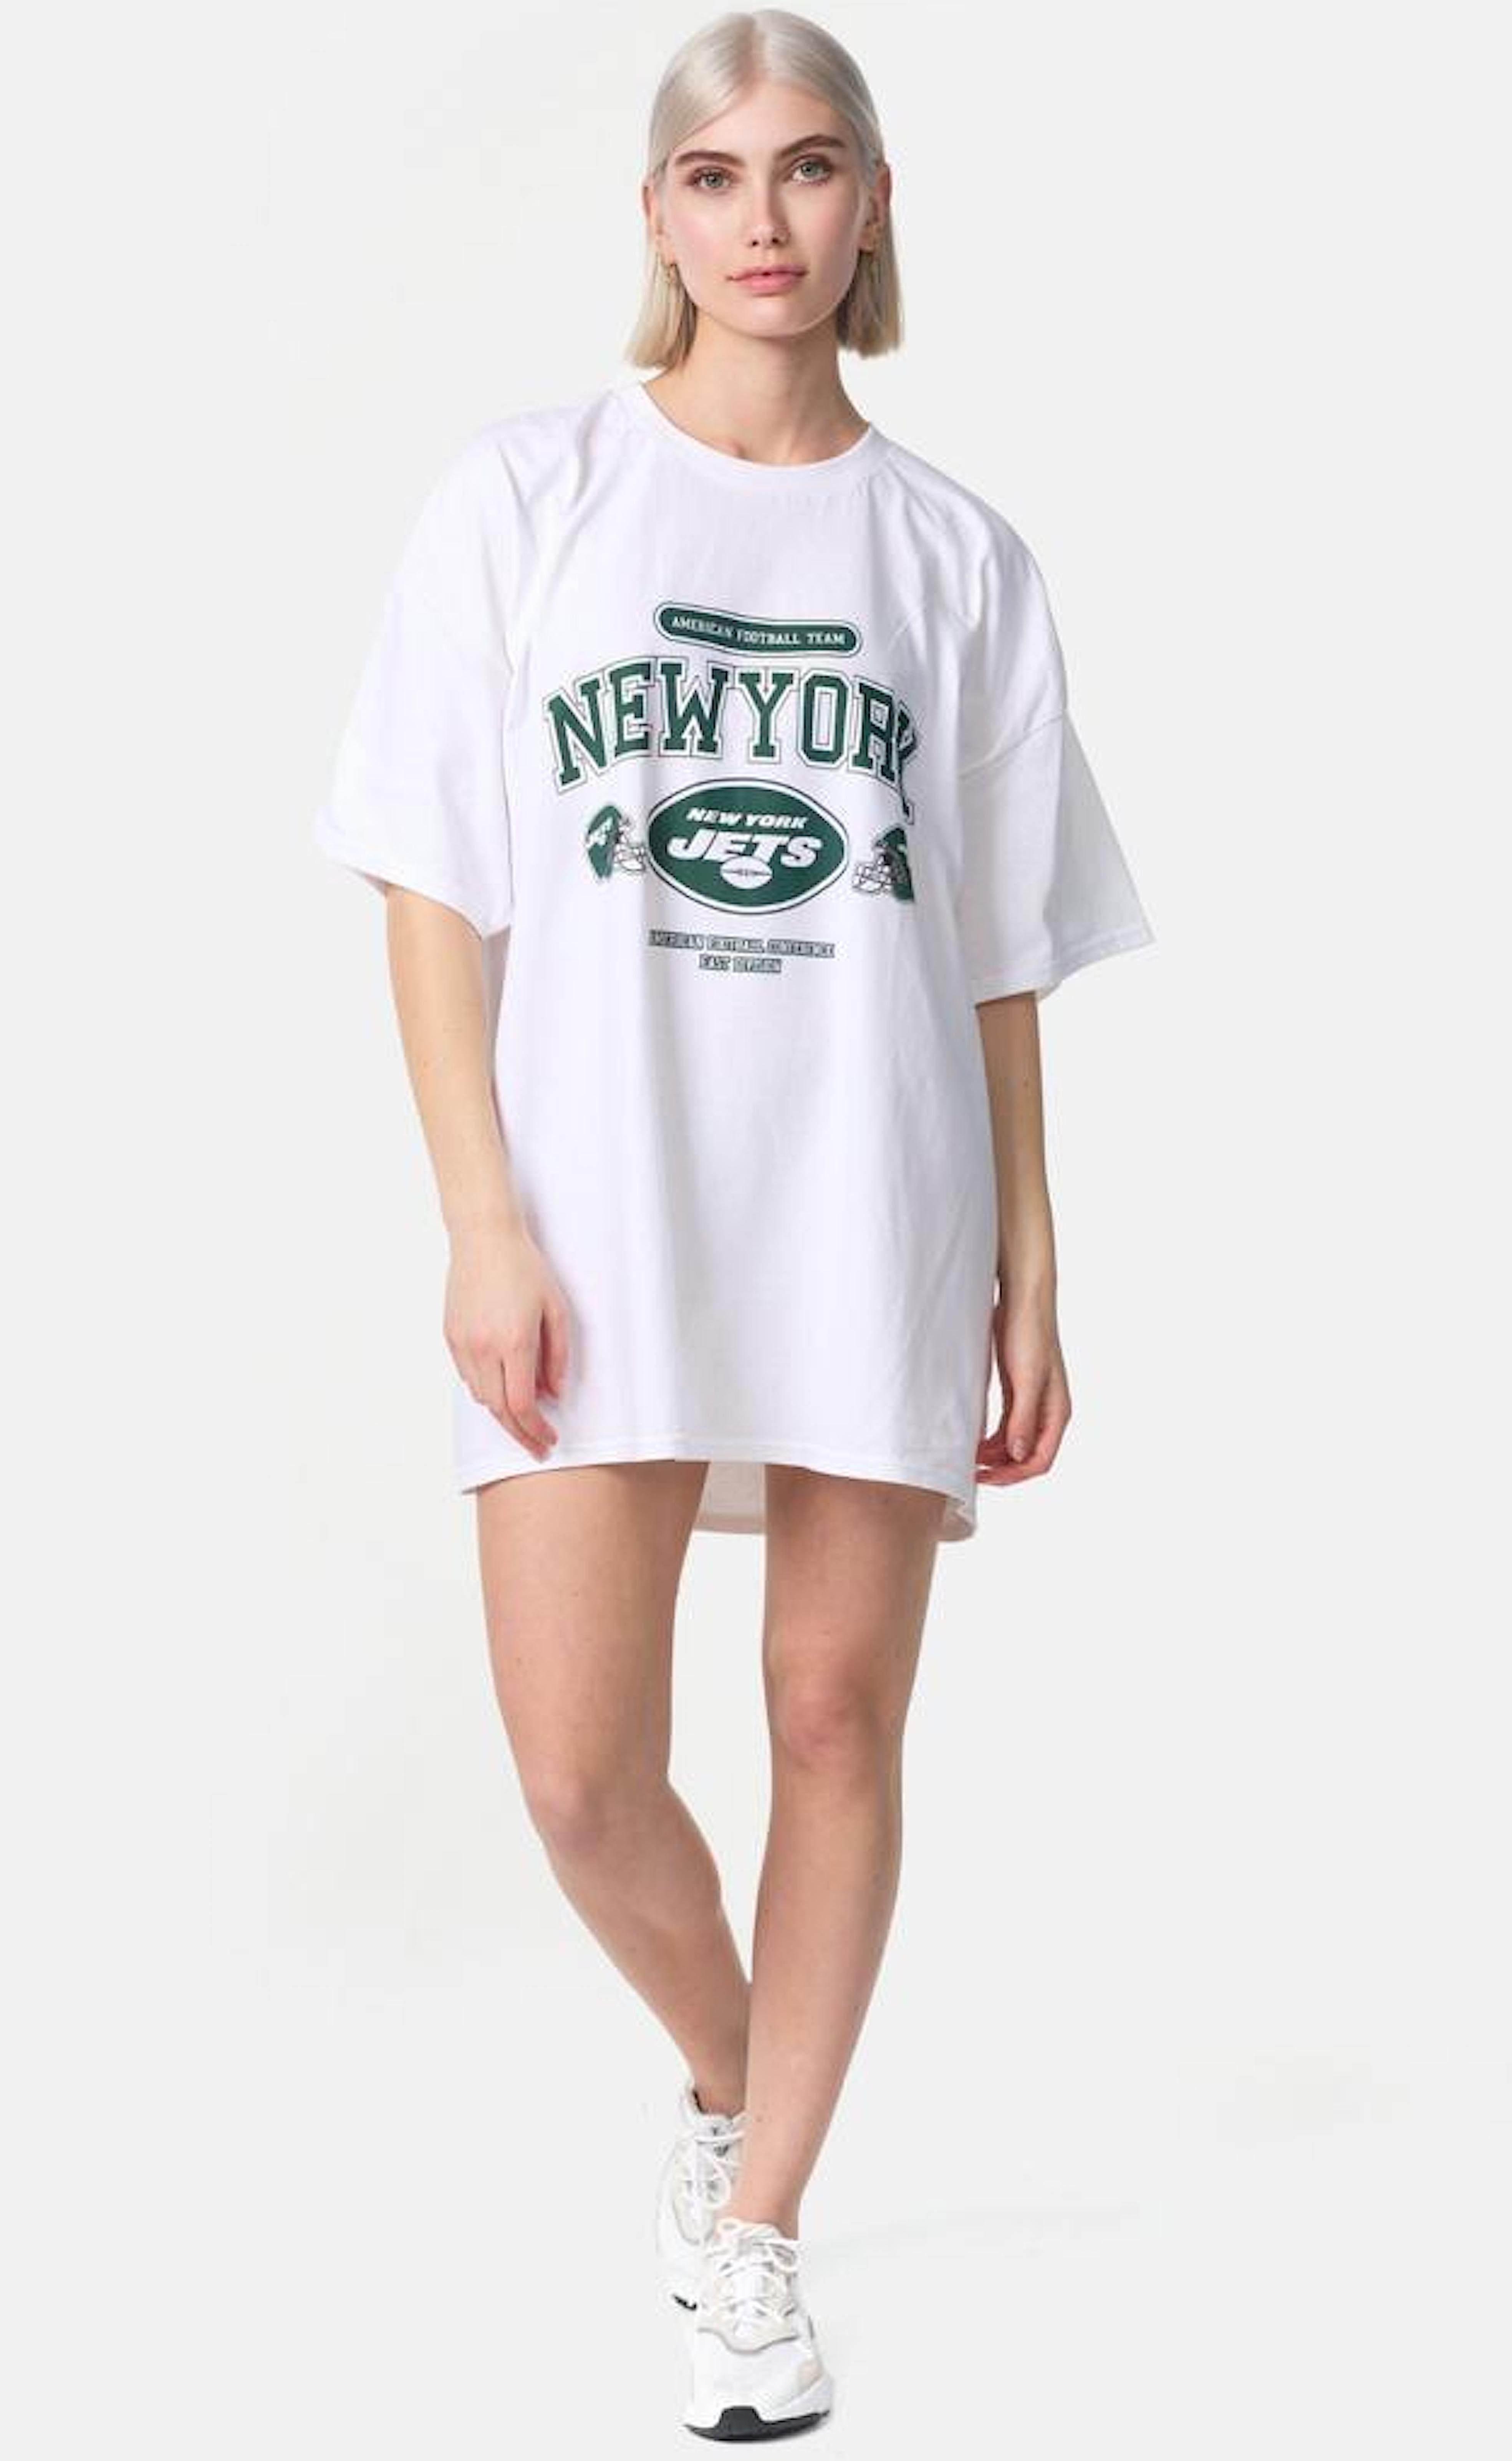 T-Shirt Worldclassca Print T-Shirt Oberteil Weiß NEW Tee Sommer Worldclassca lang Oversized YORK